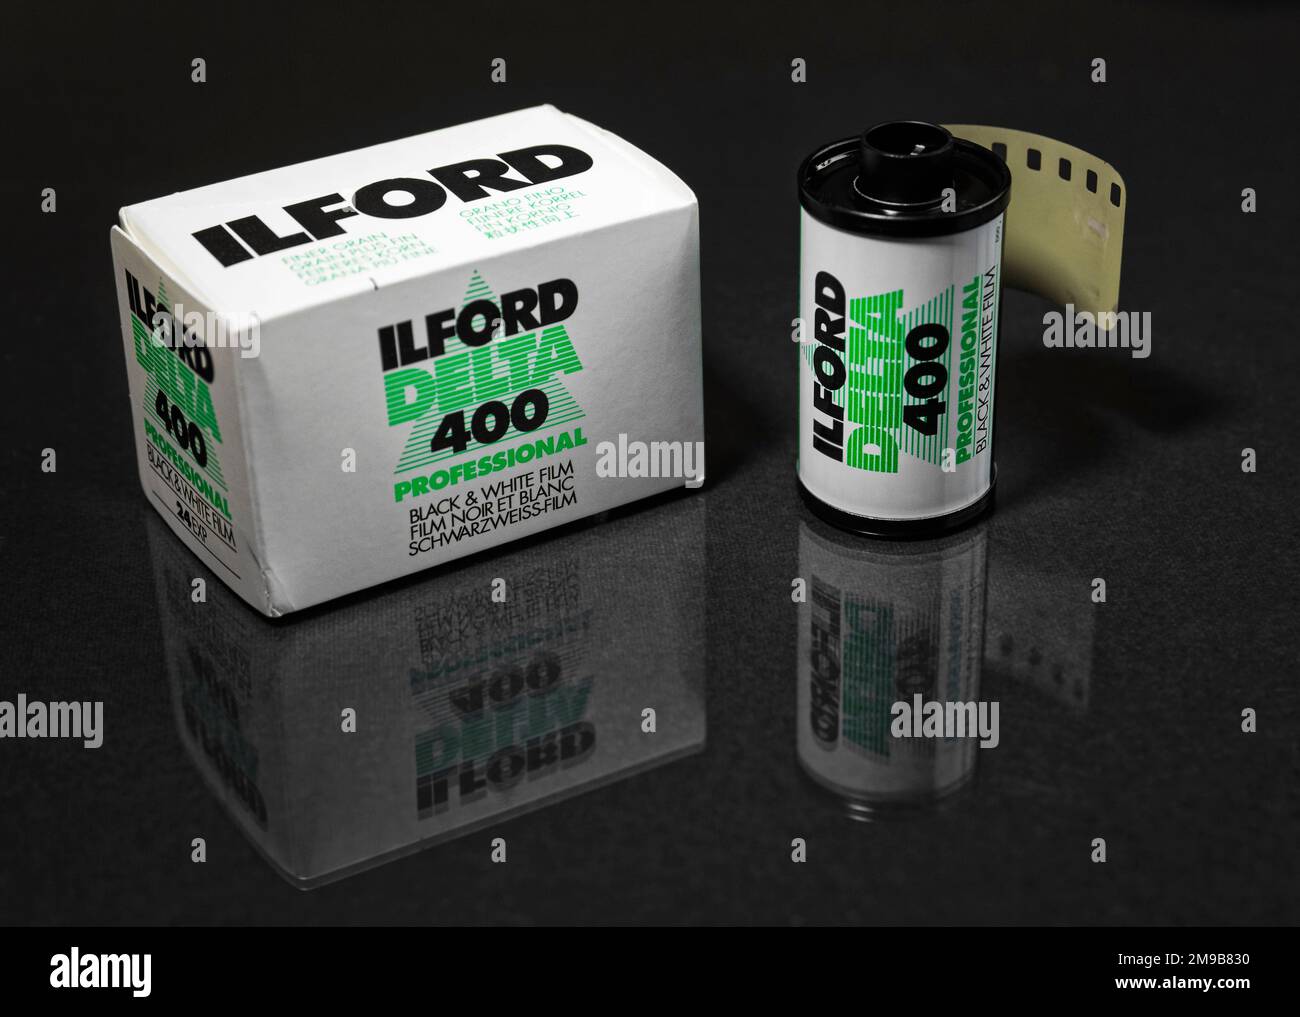 Box e rotolo di pellicola Ilford Delta 400 per 35mm telecamere Foto Stock